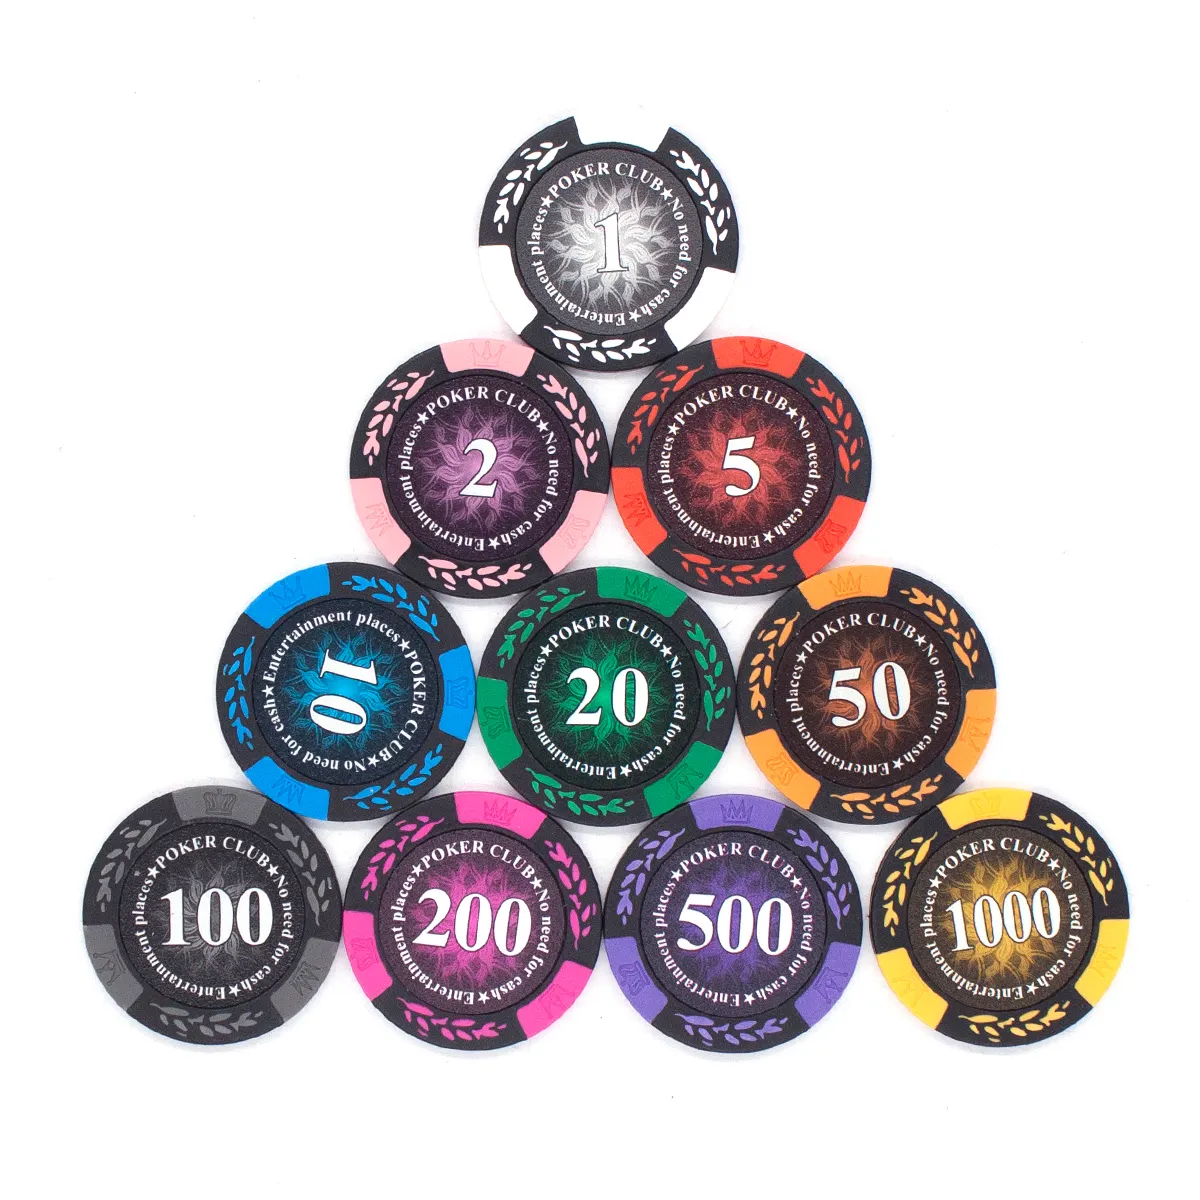 Оптовая цена, высокое качество, пользовательские чистые покерные чипсы, глина для казино, керамические покерные чипсы 14 г